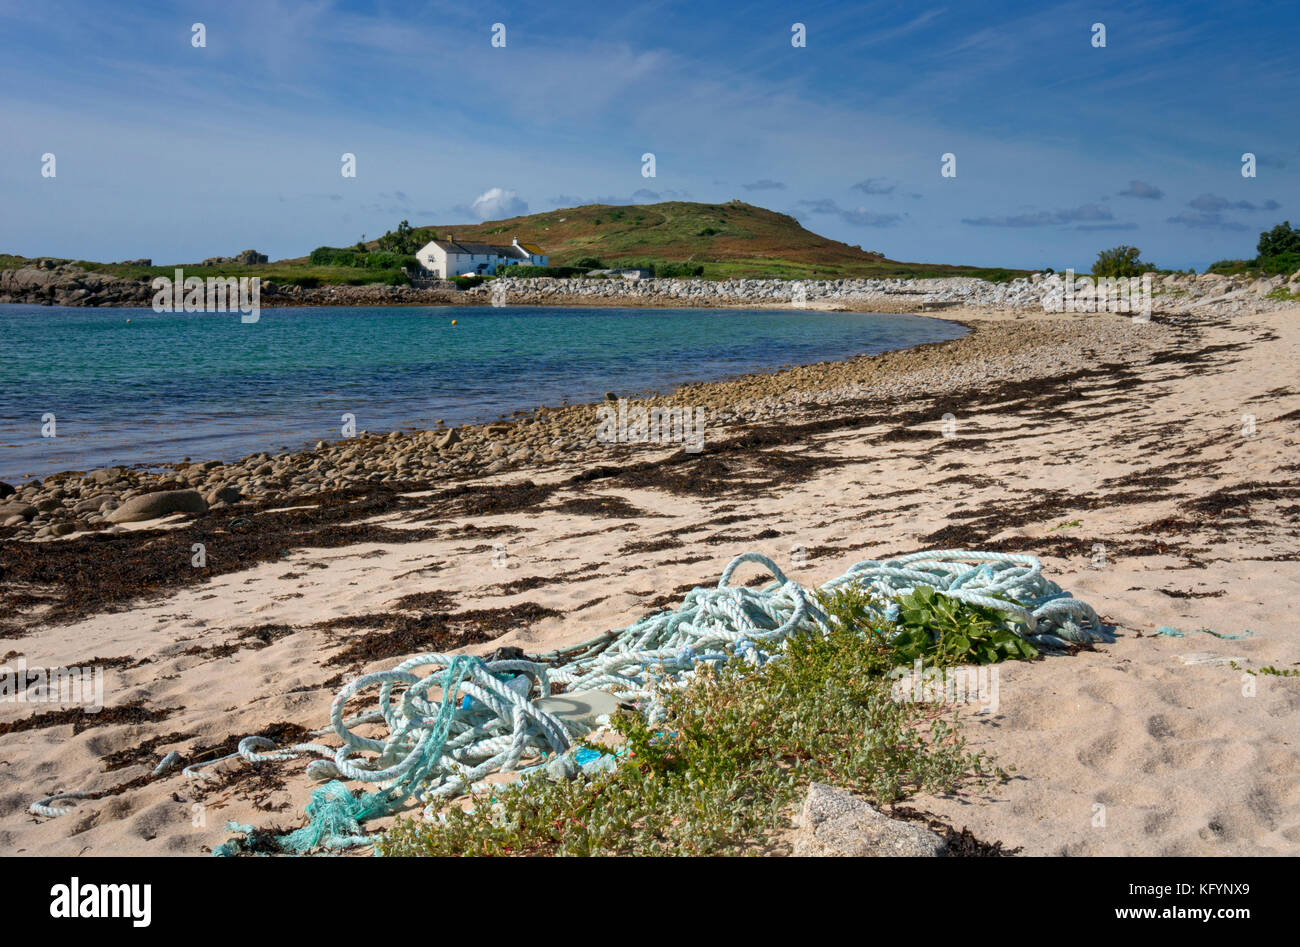 Par grande baie et la plage sur l'île de bryher,Îles Scilly, Royaume-Uni Banque D'Images